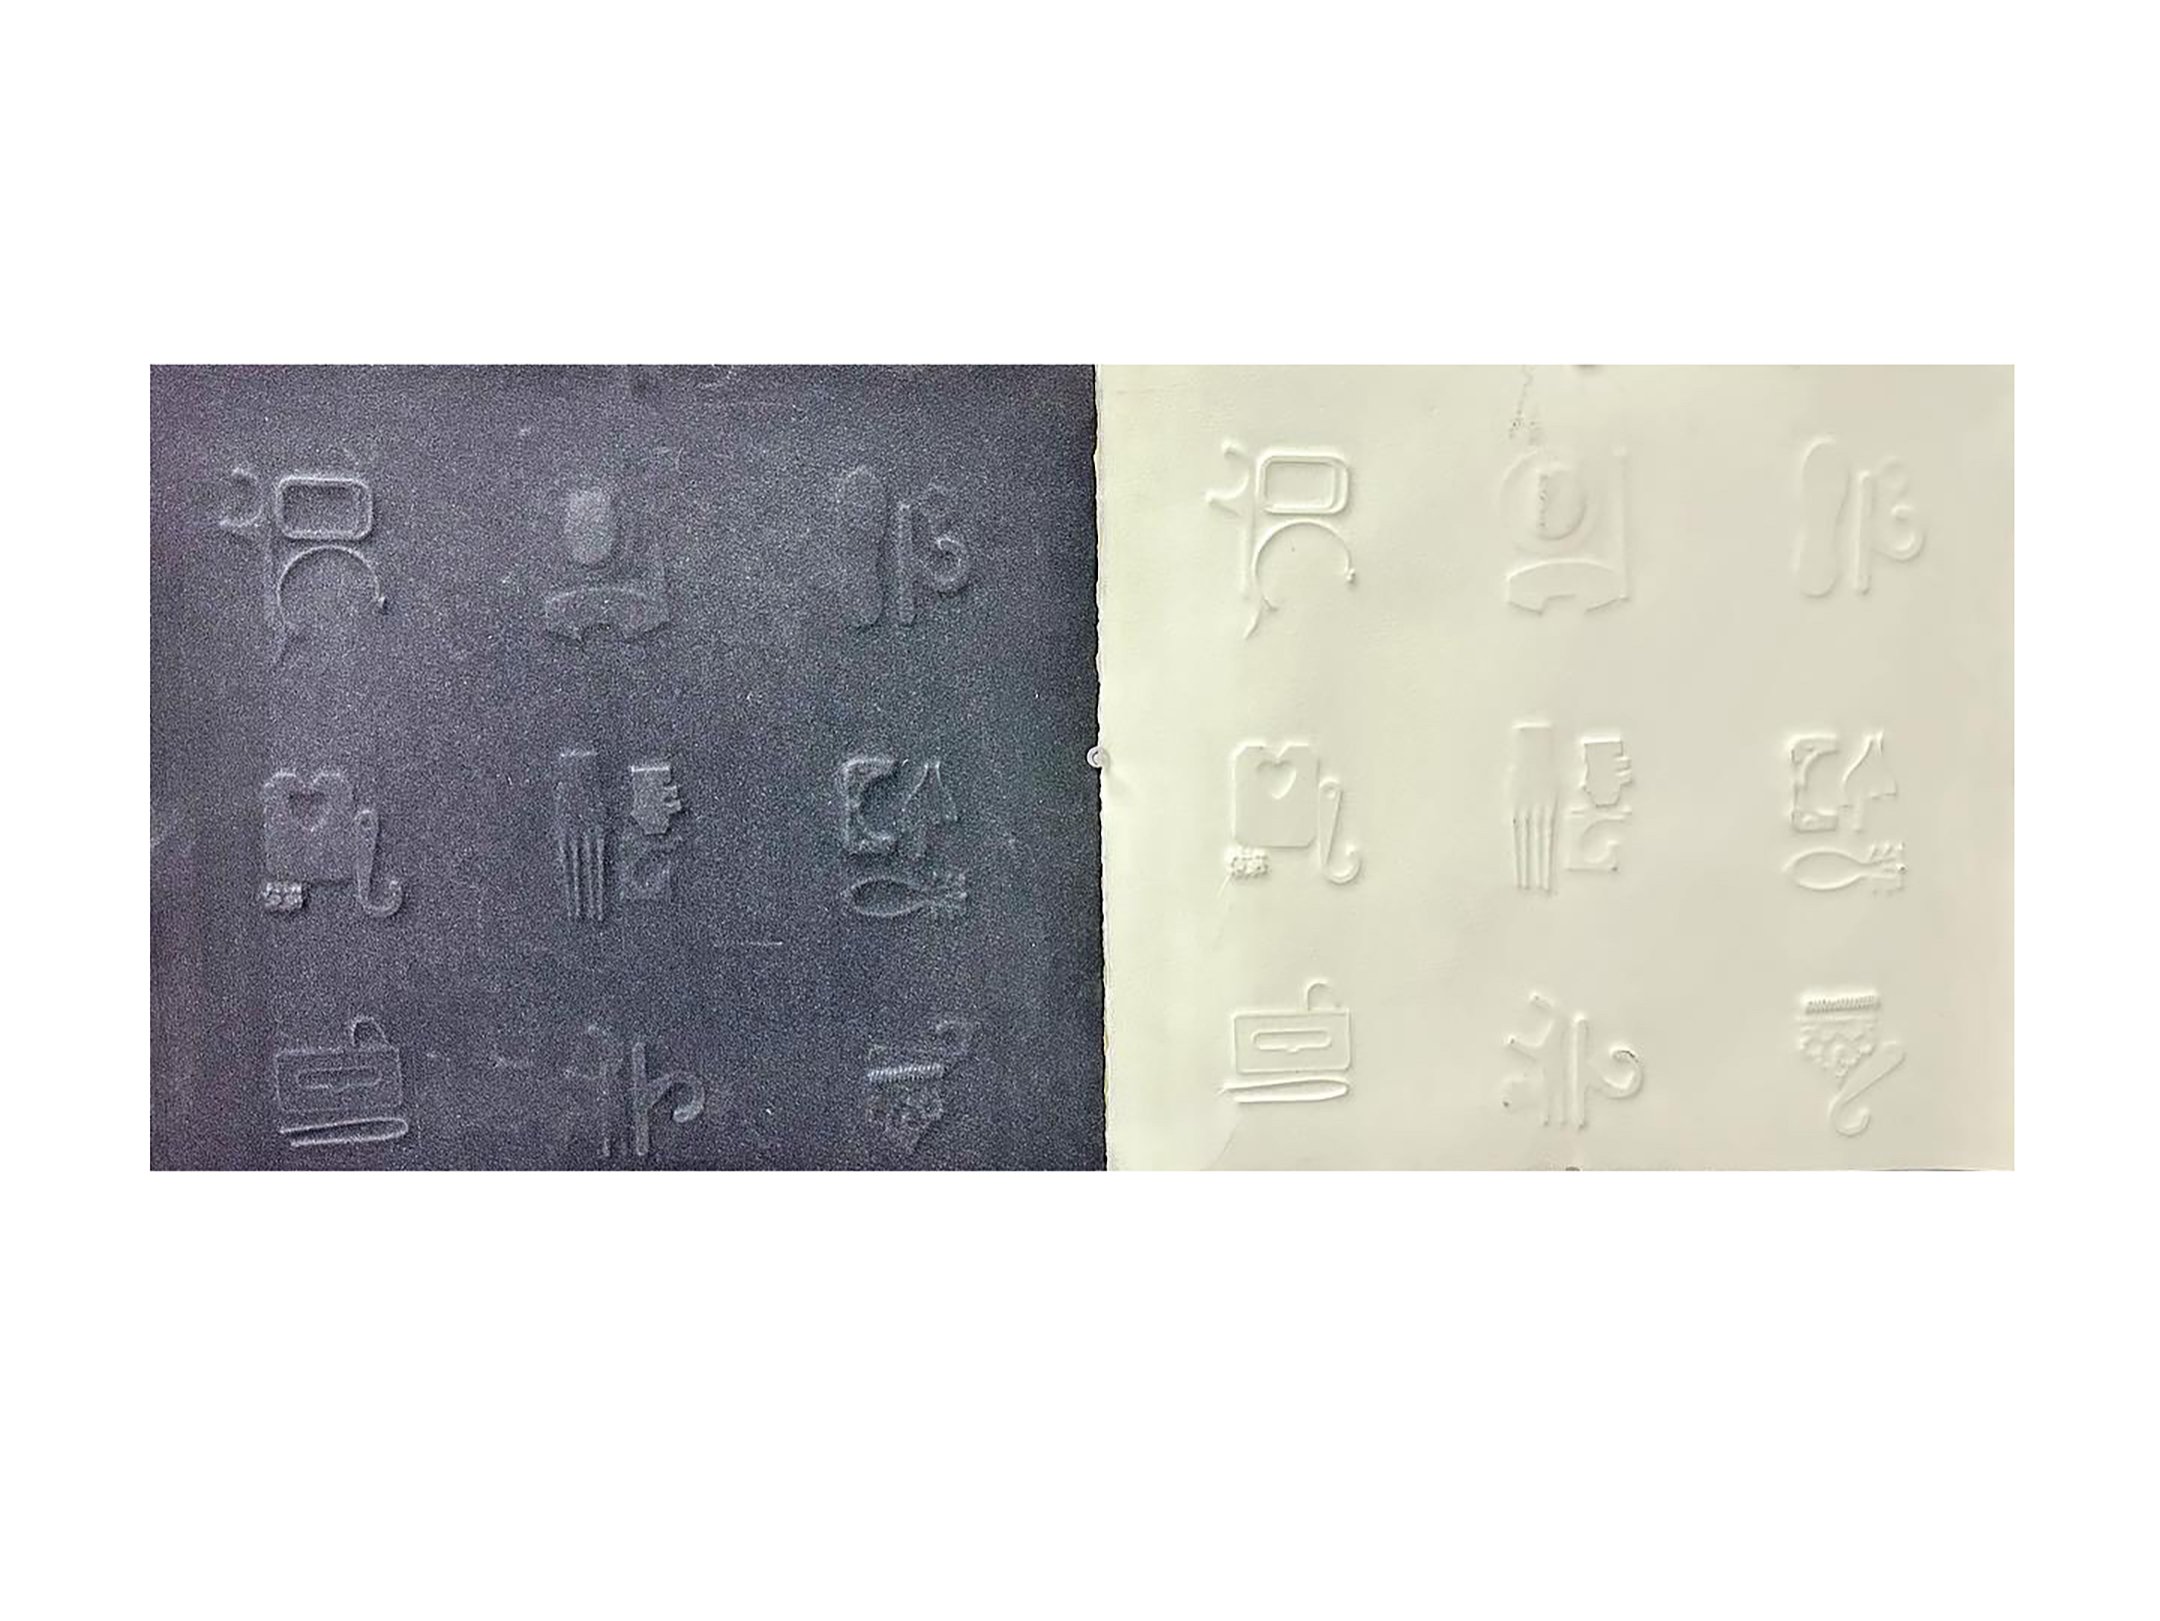    Plastiglyphic Prints    embossed paper monoprints  (unique)  14” x 18” each  2023  (available) 